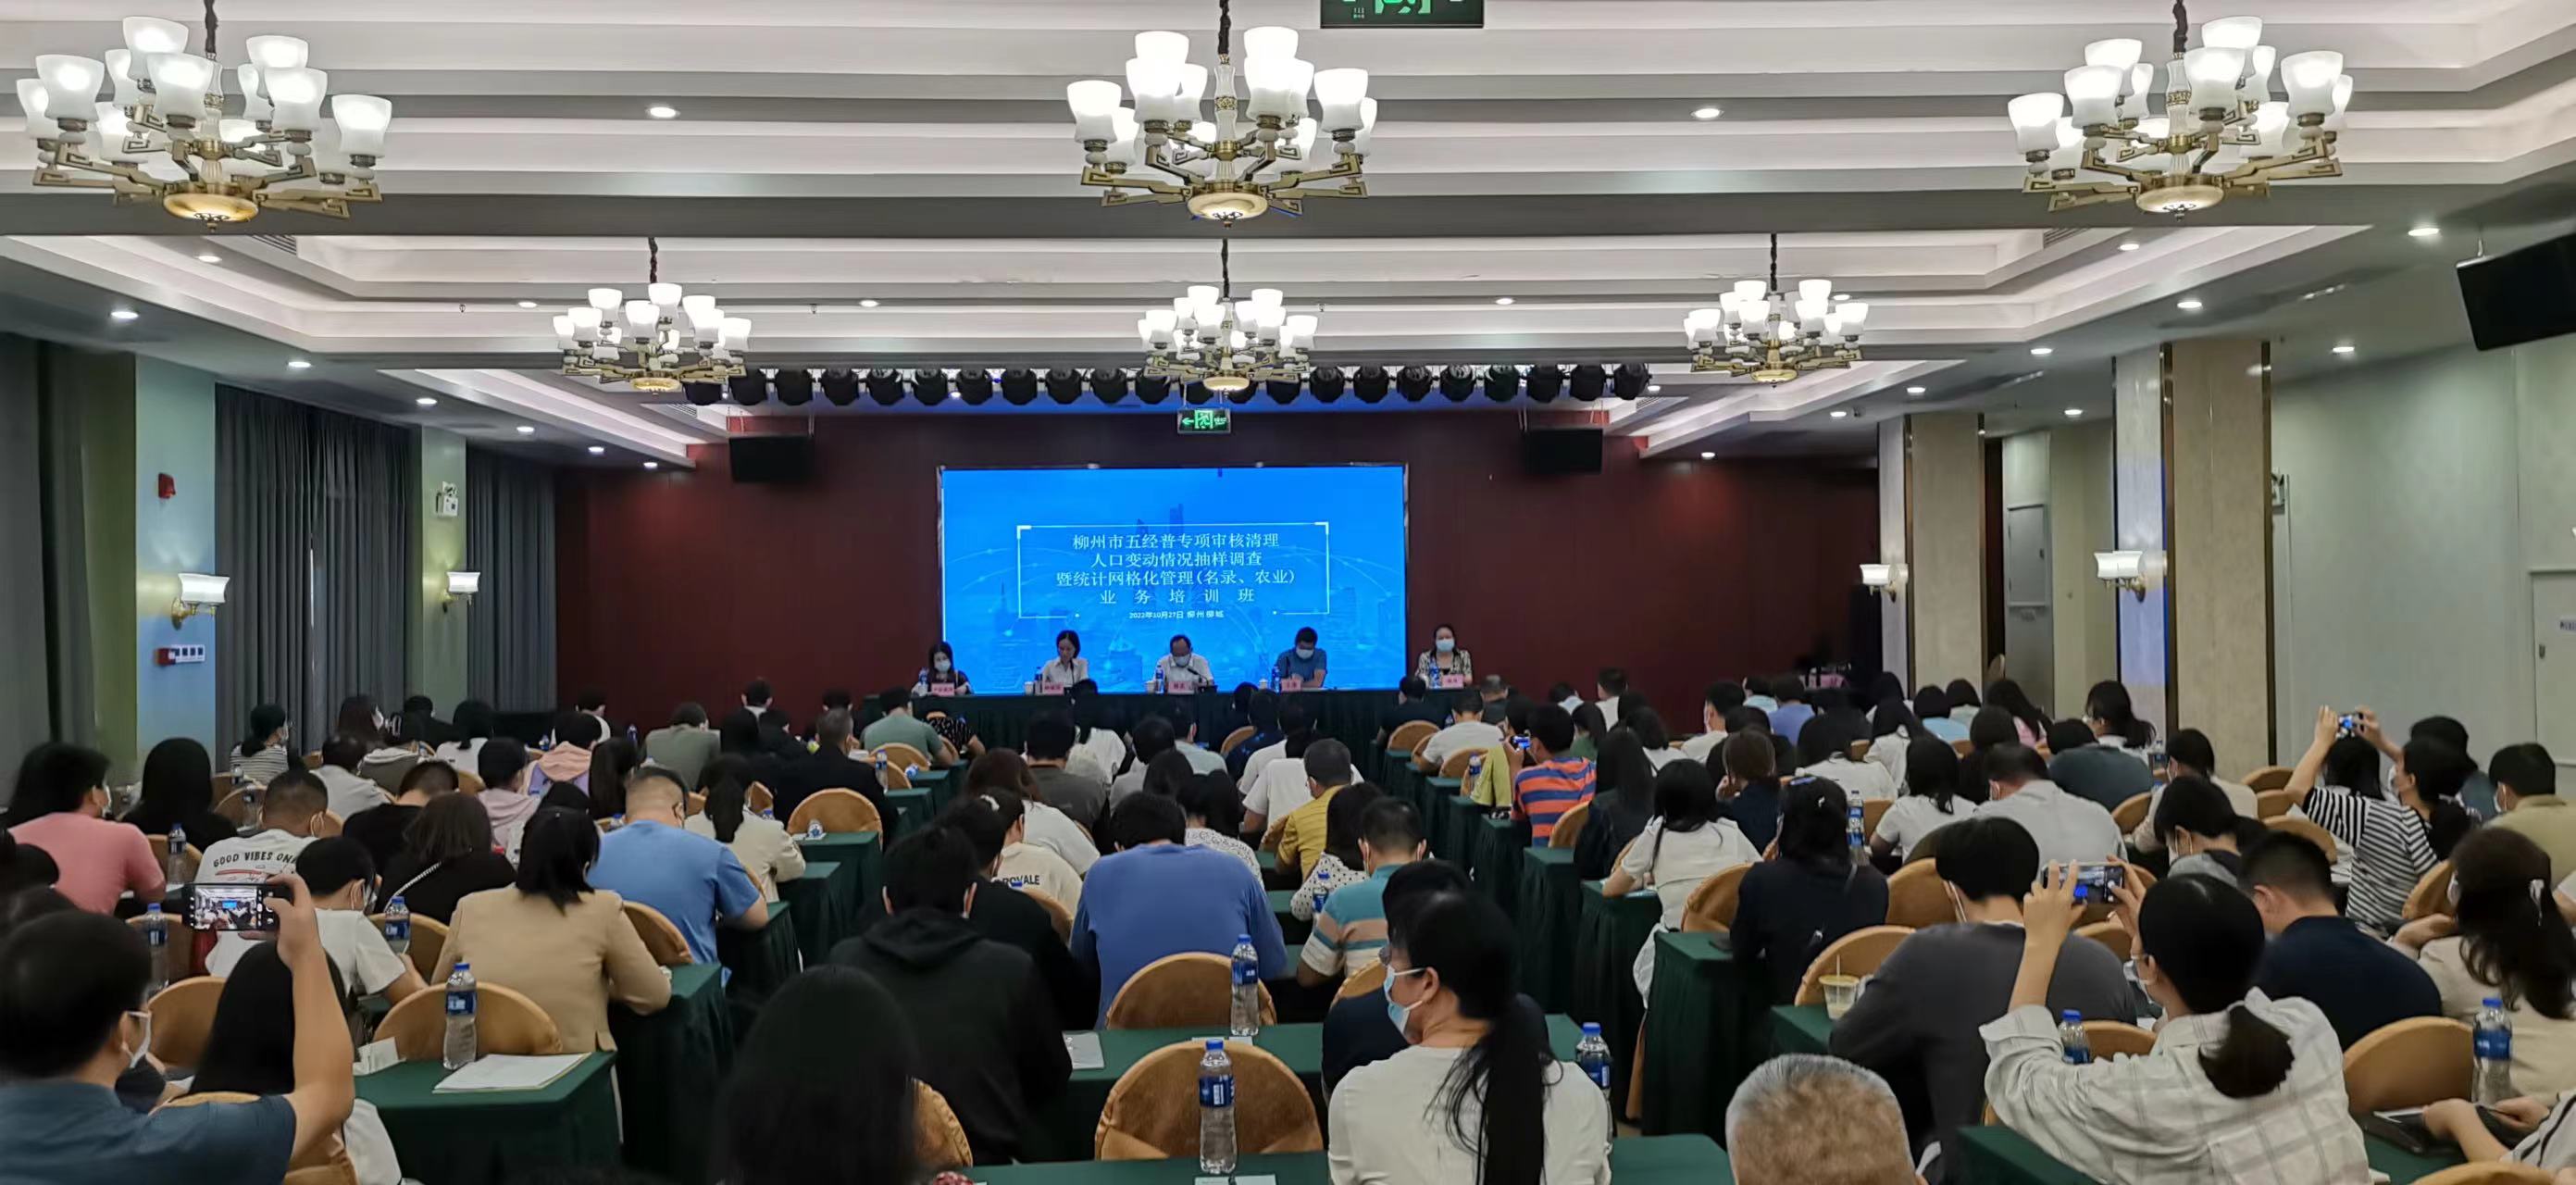 柳州市举办五经普专项审核清理暨统计网格化管理业务培训班